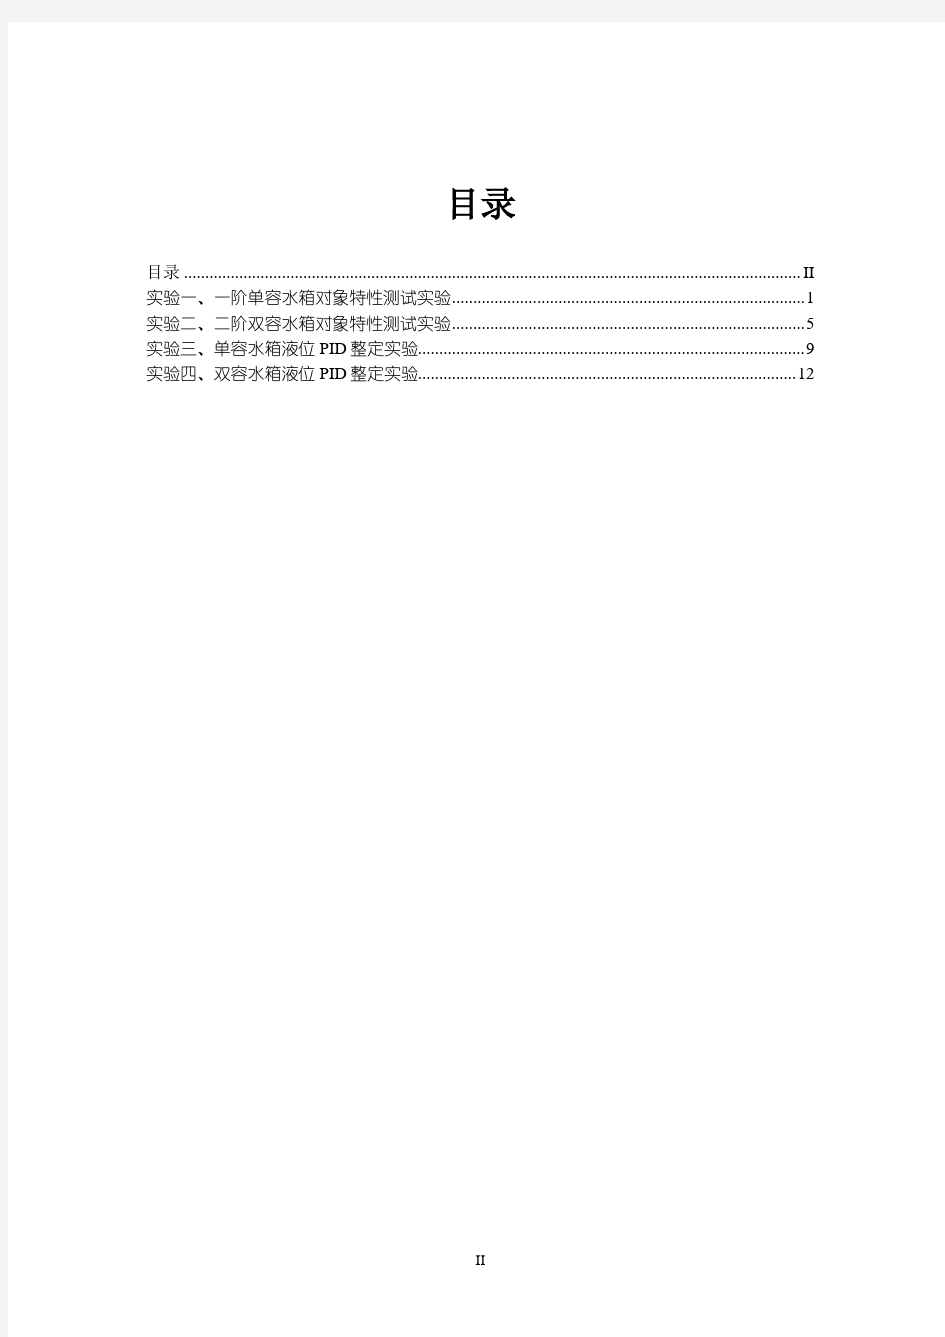 宁波工程学院 过程控制系统 CS4000DCS实验指导书 廖远江 201402(4次实验)